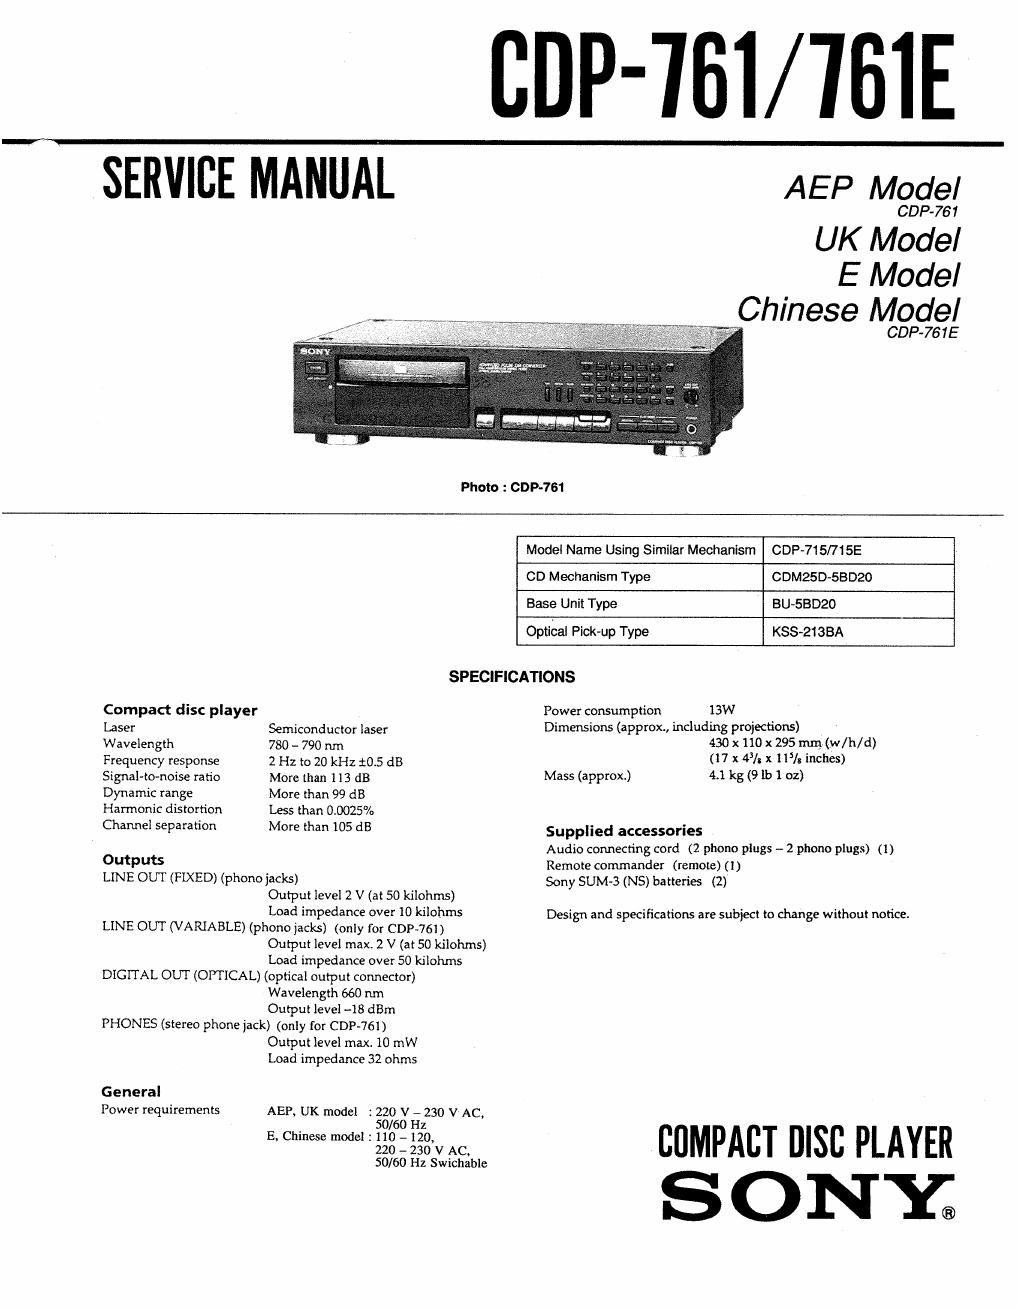 sony cdp 761 service manual